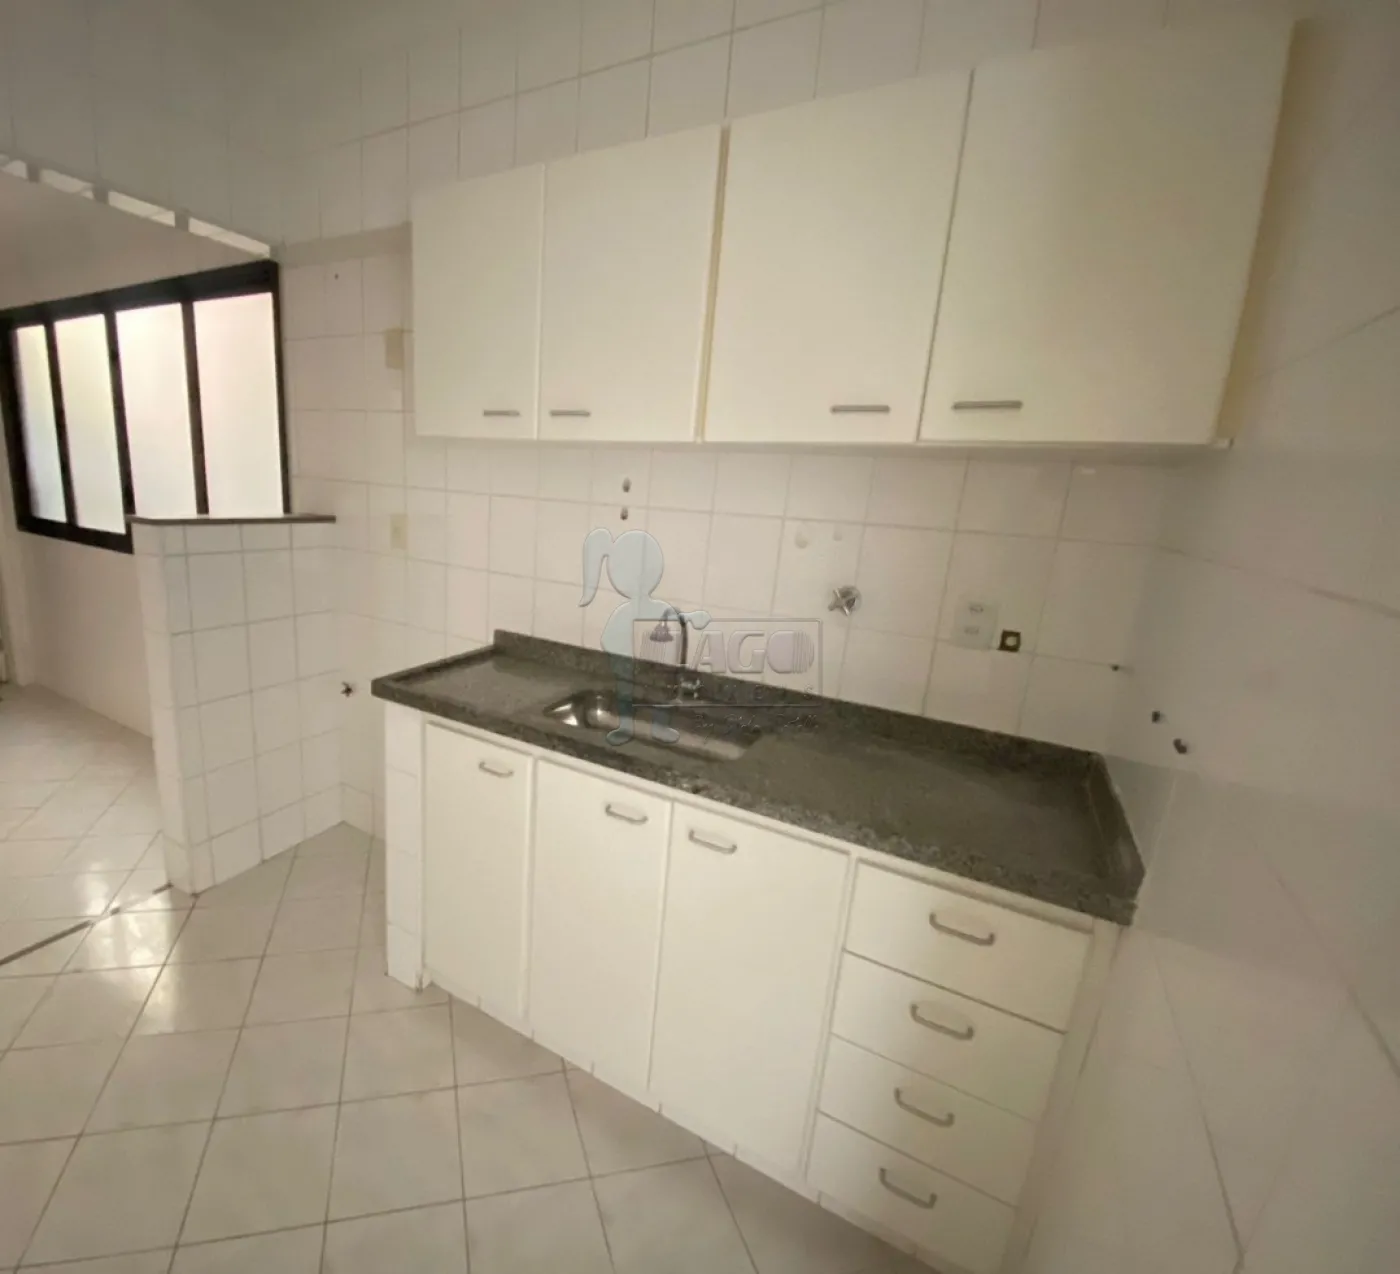 Alugar Apartamento / Padrão em Ribeirão Preto R$ 1.450,00 - Foto 3